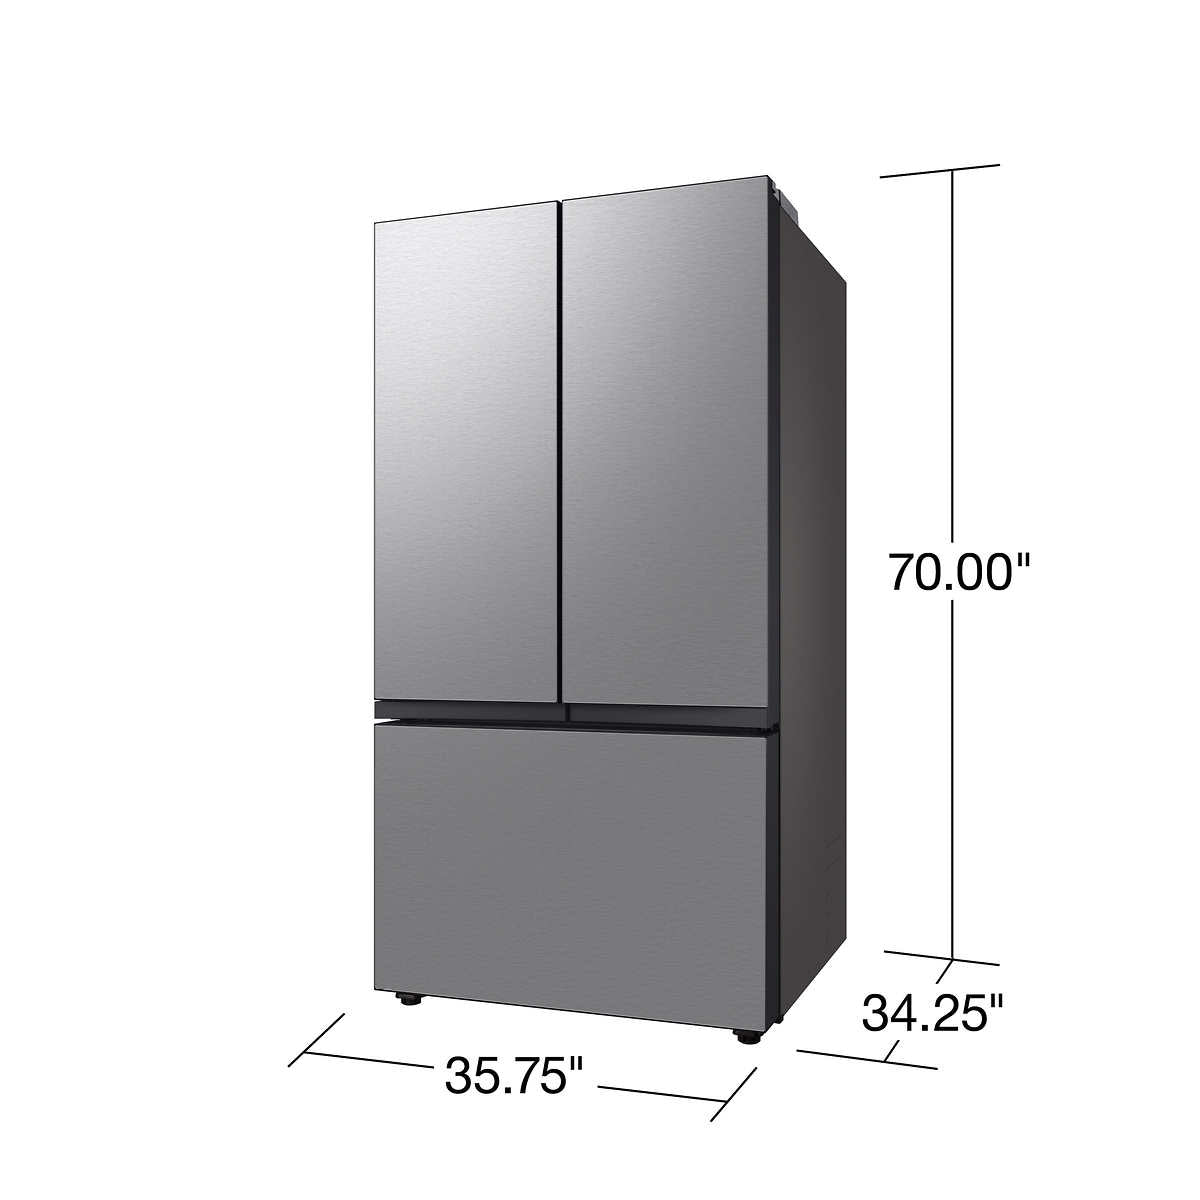 Samsung 30 cu. ft. Bespoke 3-Door French Door Refrigerator with Beverage Center